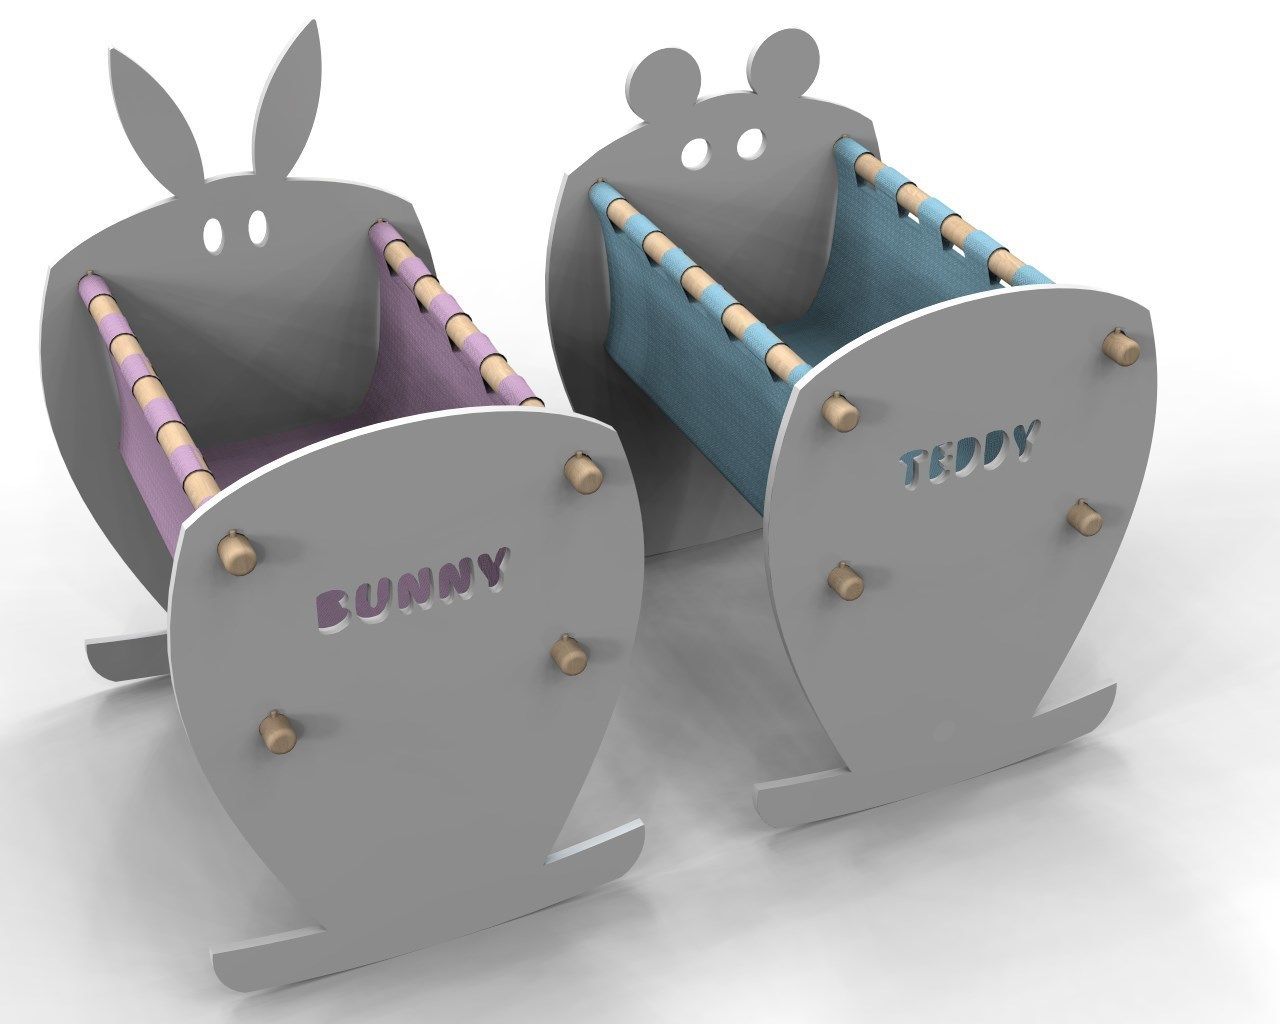 Teddy&Bunny, Nyda Design - Nicola D'Alessandro architetto Nyda Design - Nicola D'Alessandro architetto Dormitorios infantiles modernos Camas y cunas